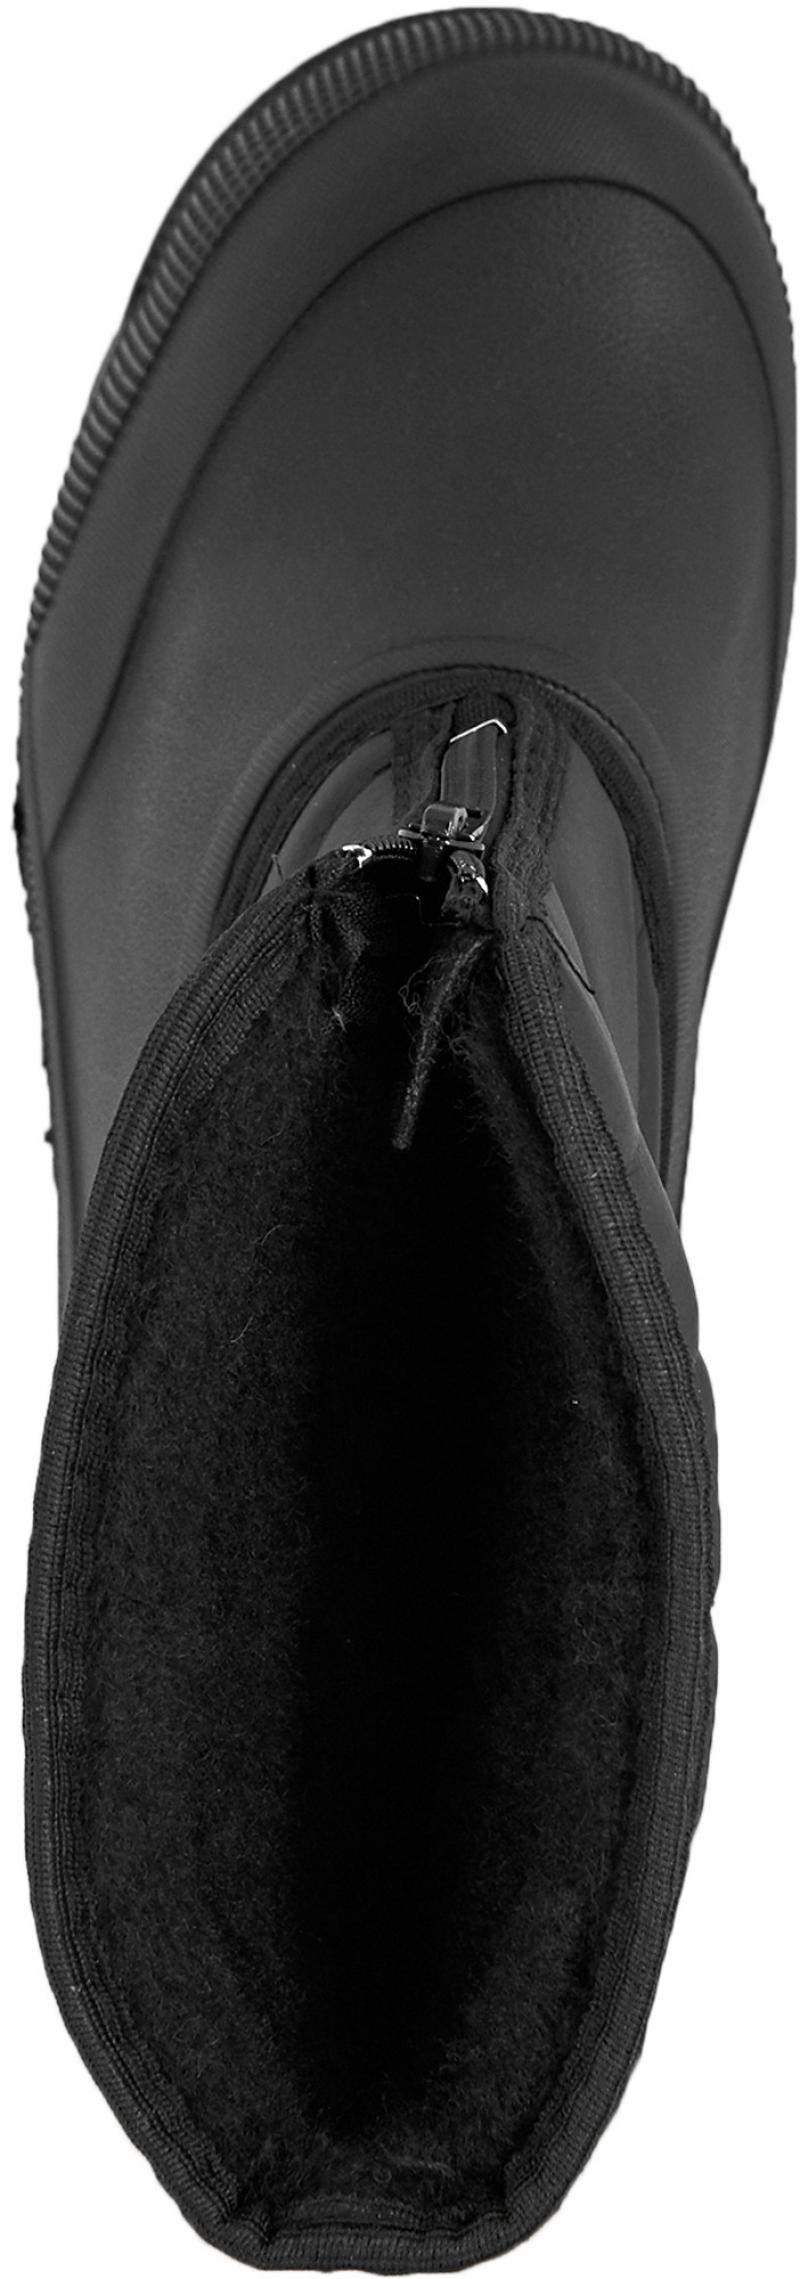 Сапоги мужские М-018 размер 46 цвет чёрный